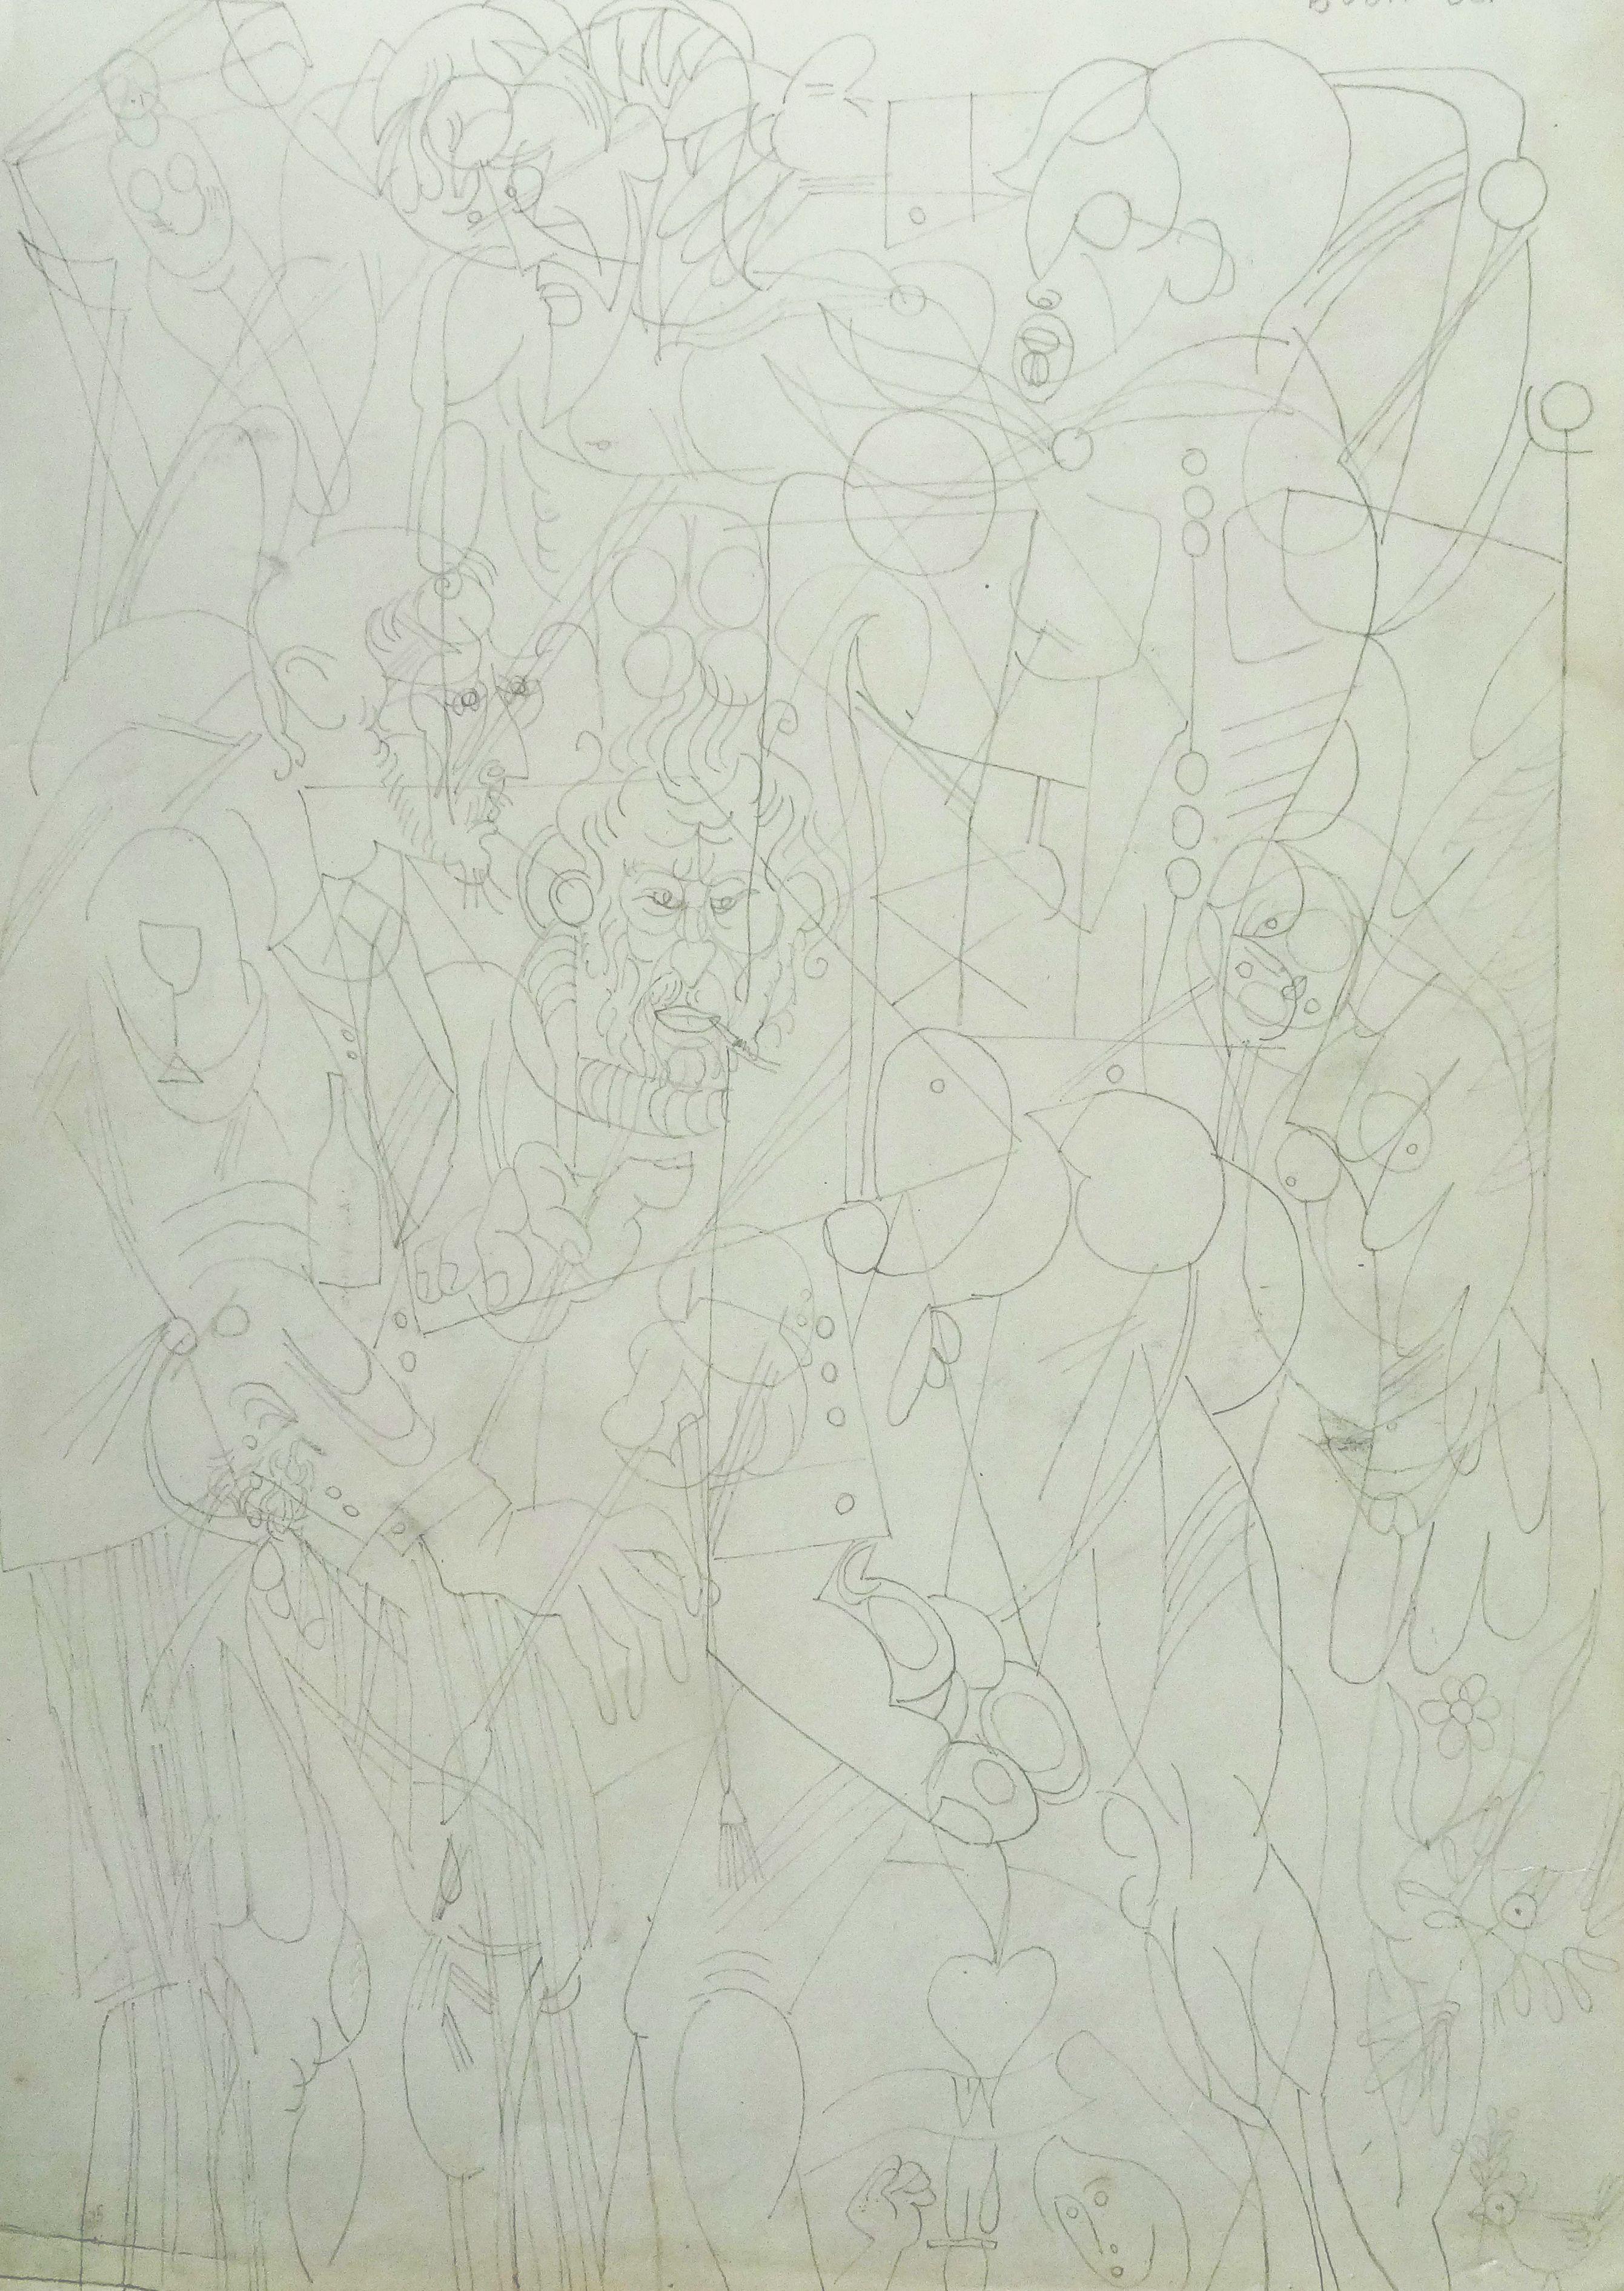 Composition with figures. 1968. Paper, pencil, 35x24.5 cm